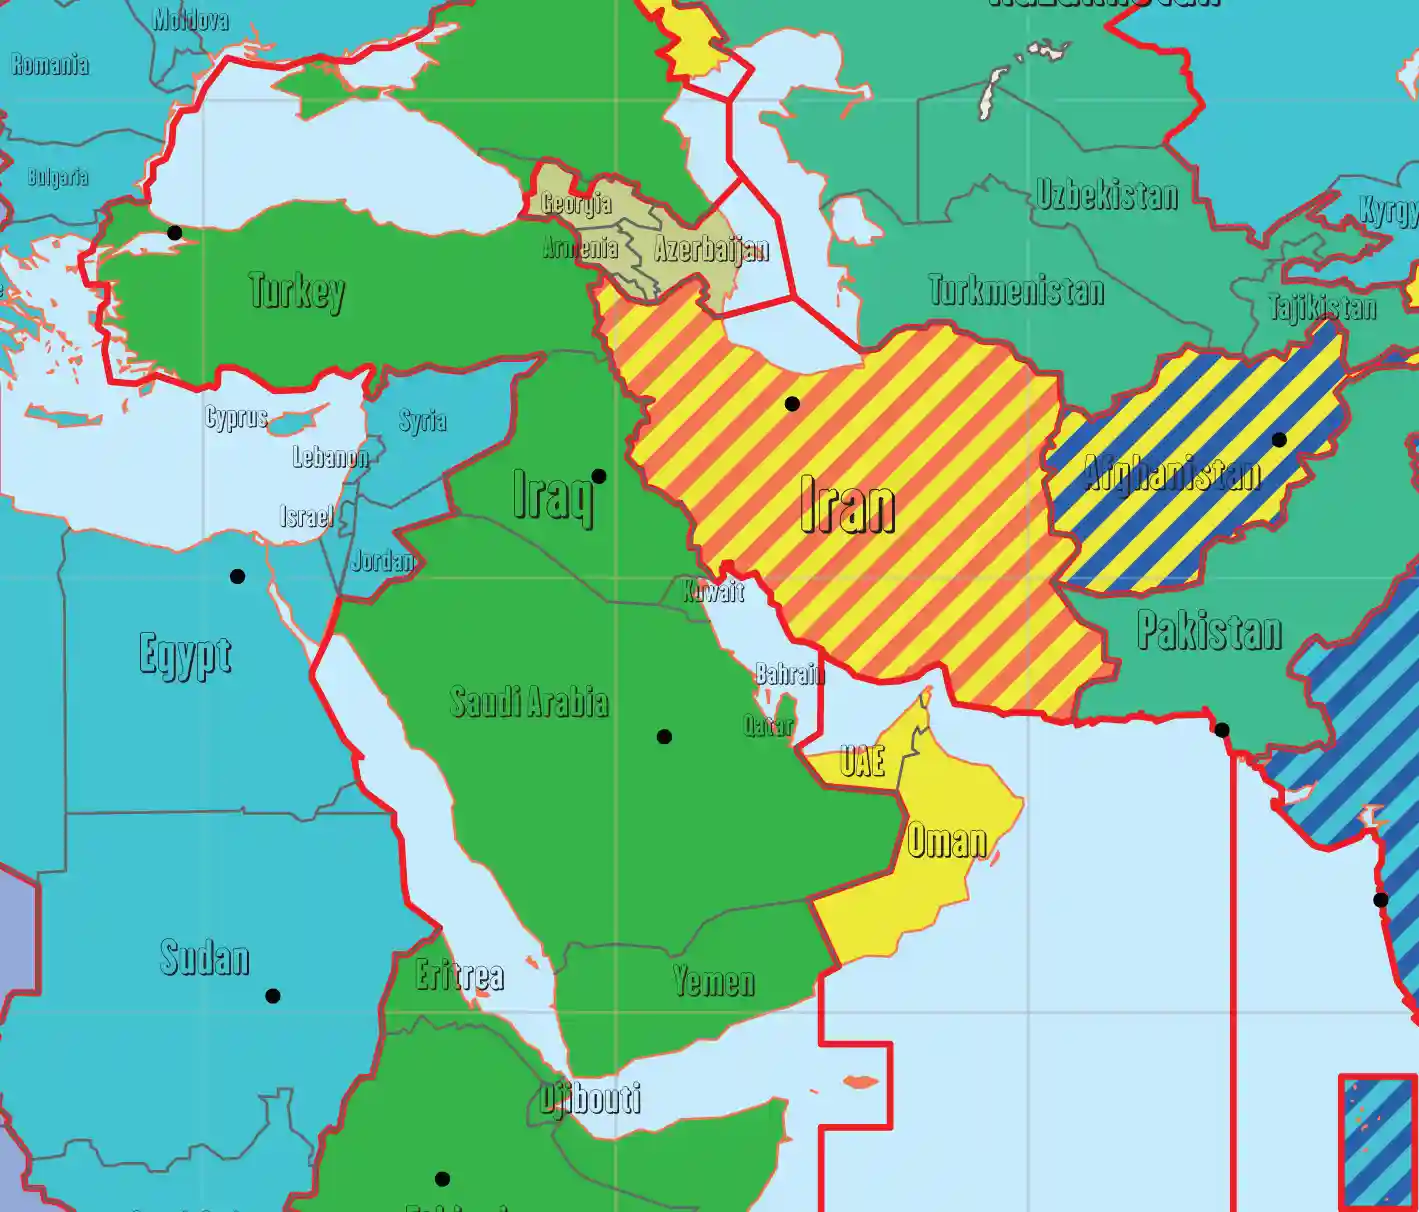 Bliski Istok karta vremenskih zona